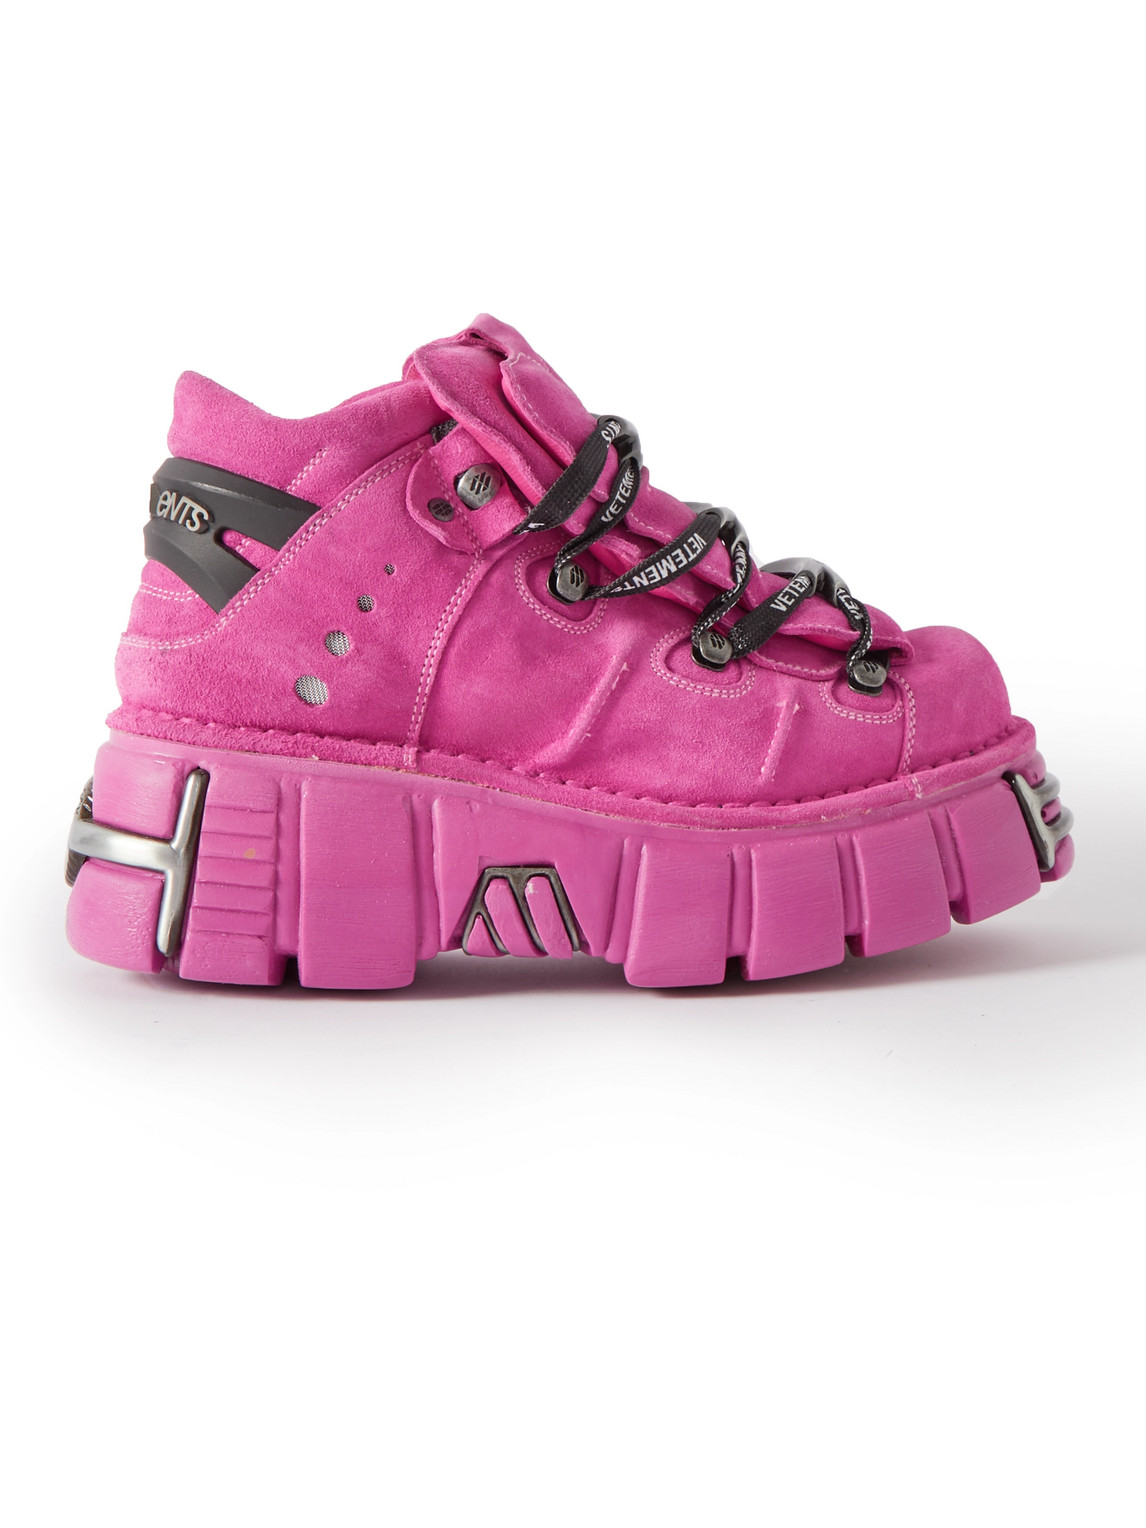 VETEMENTS - New Rock Embellished Suede Platform Sneakers - Men - Pink - EU 44